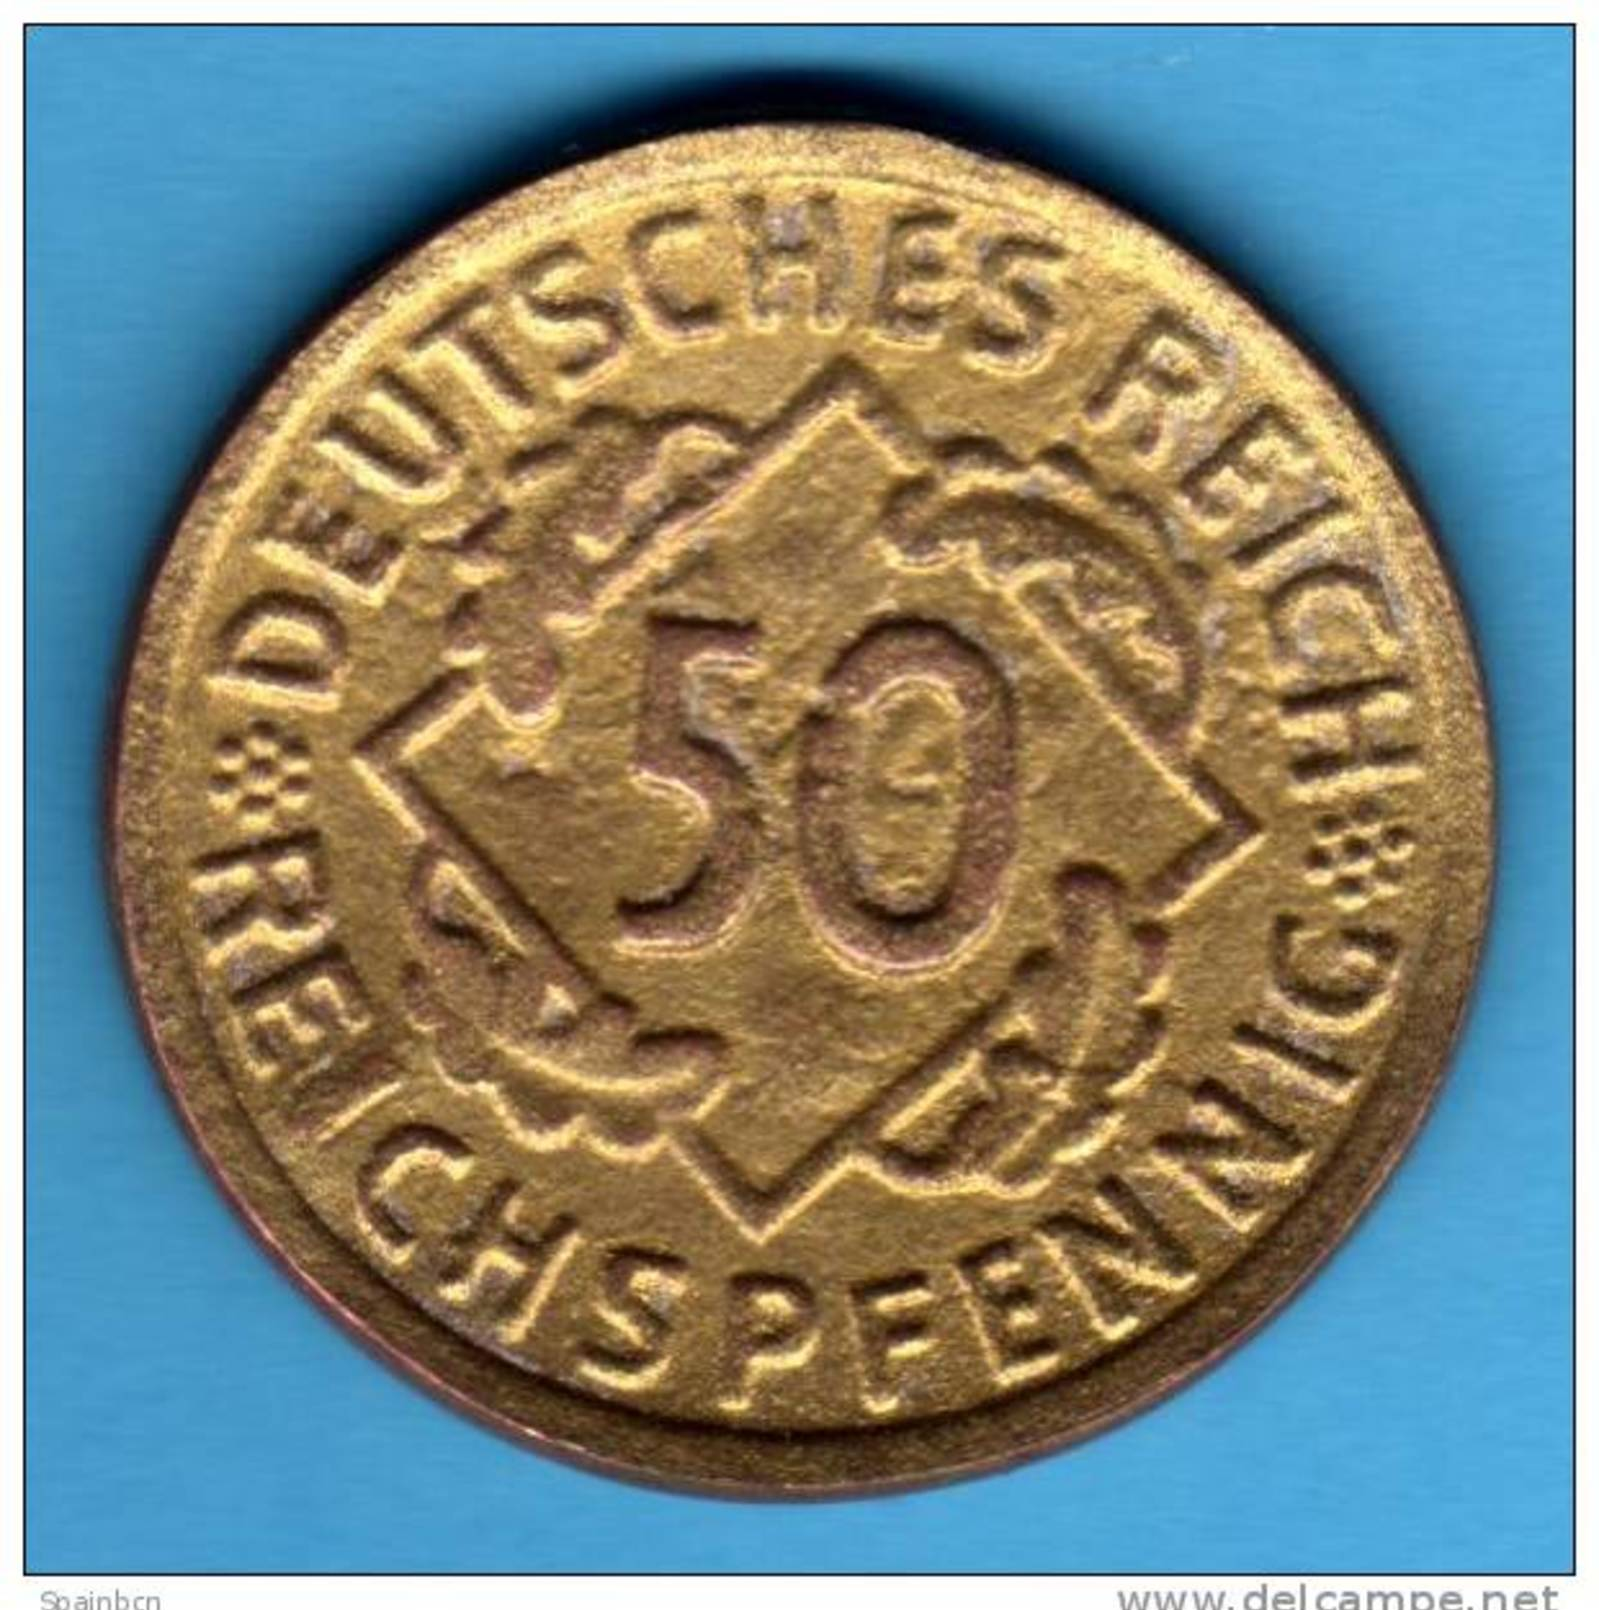 COPIA   WEIMAR     50 Reichspfennig 1924 F     COPY      ALEMANIA GERMANY DEUTSCHLAND - 50 Rentenpfennig & 50 Reichspfennig